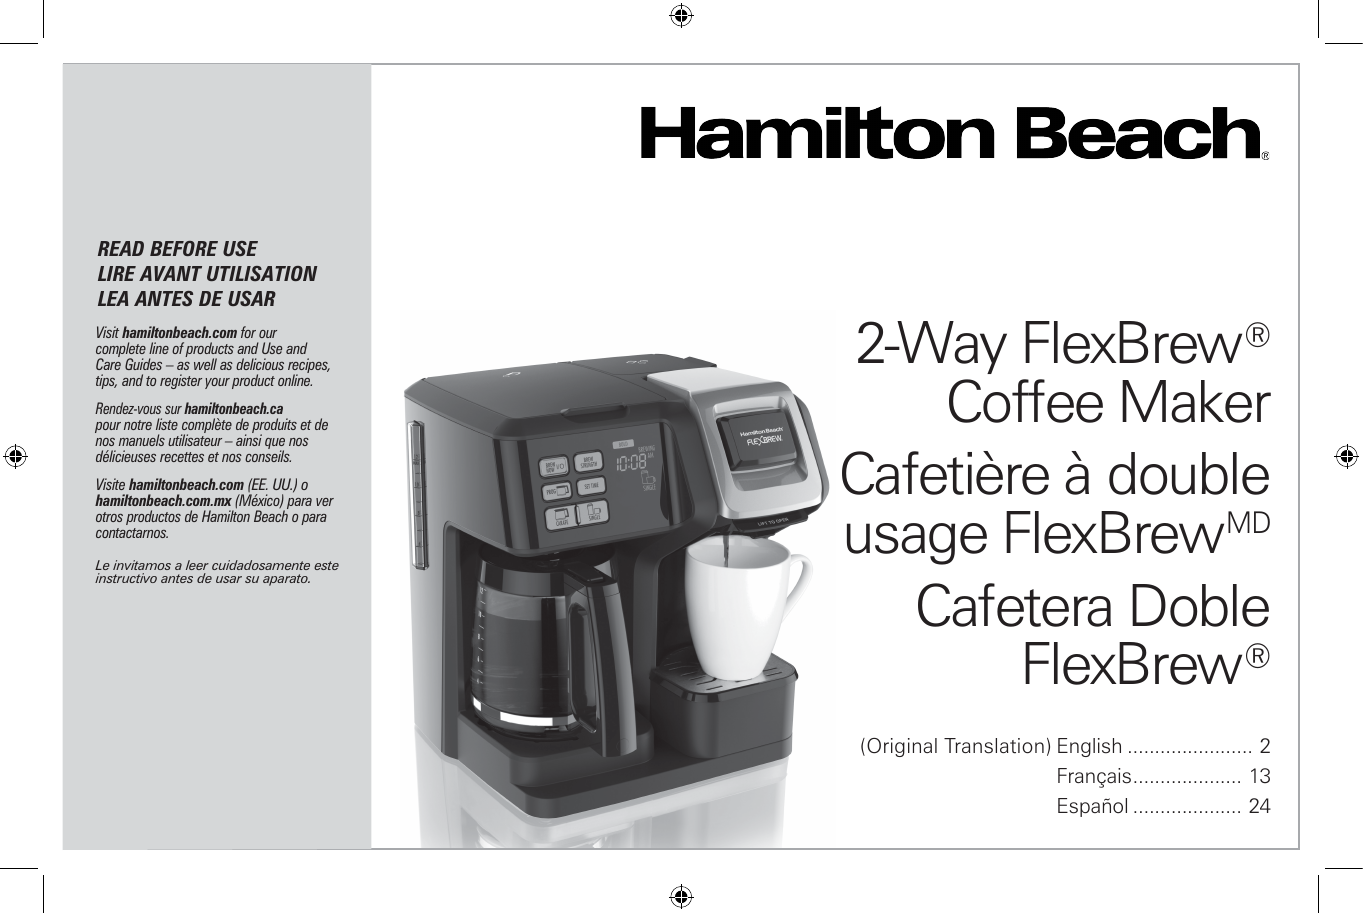 Hamilton Beach FlexBrew Trio Coffee Maker 49934 - general for sale